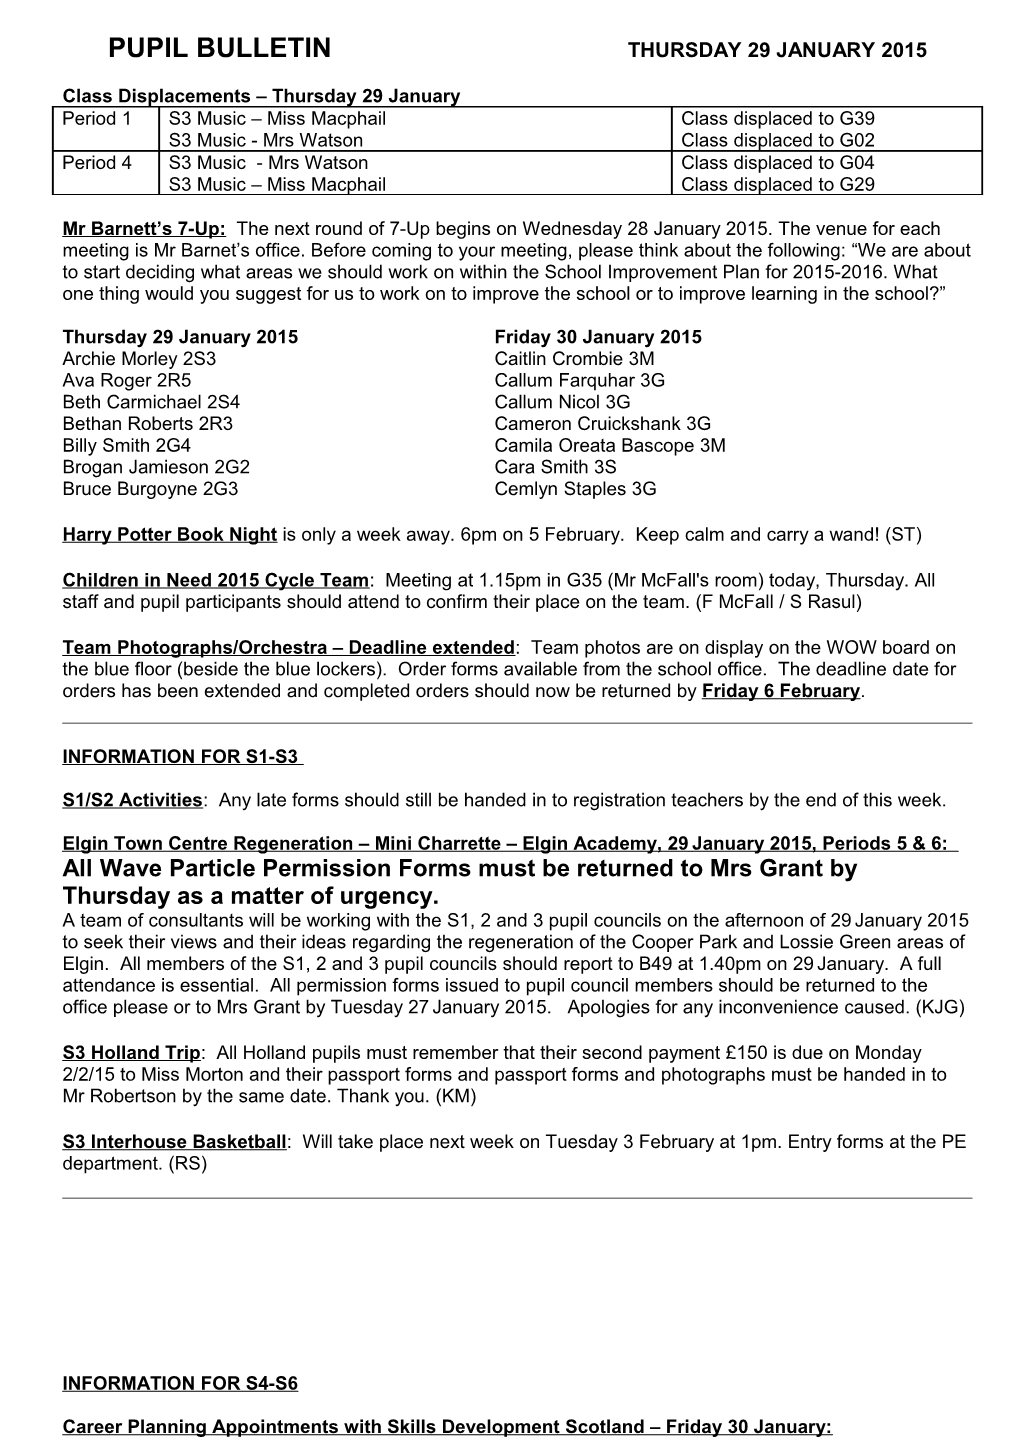 Pupil Bulletin Thursday 29 January 2015